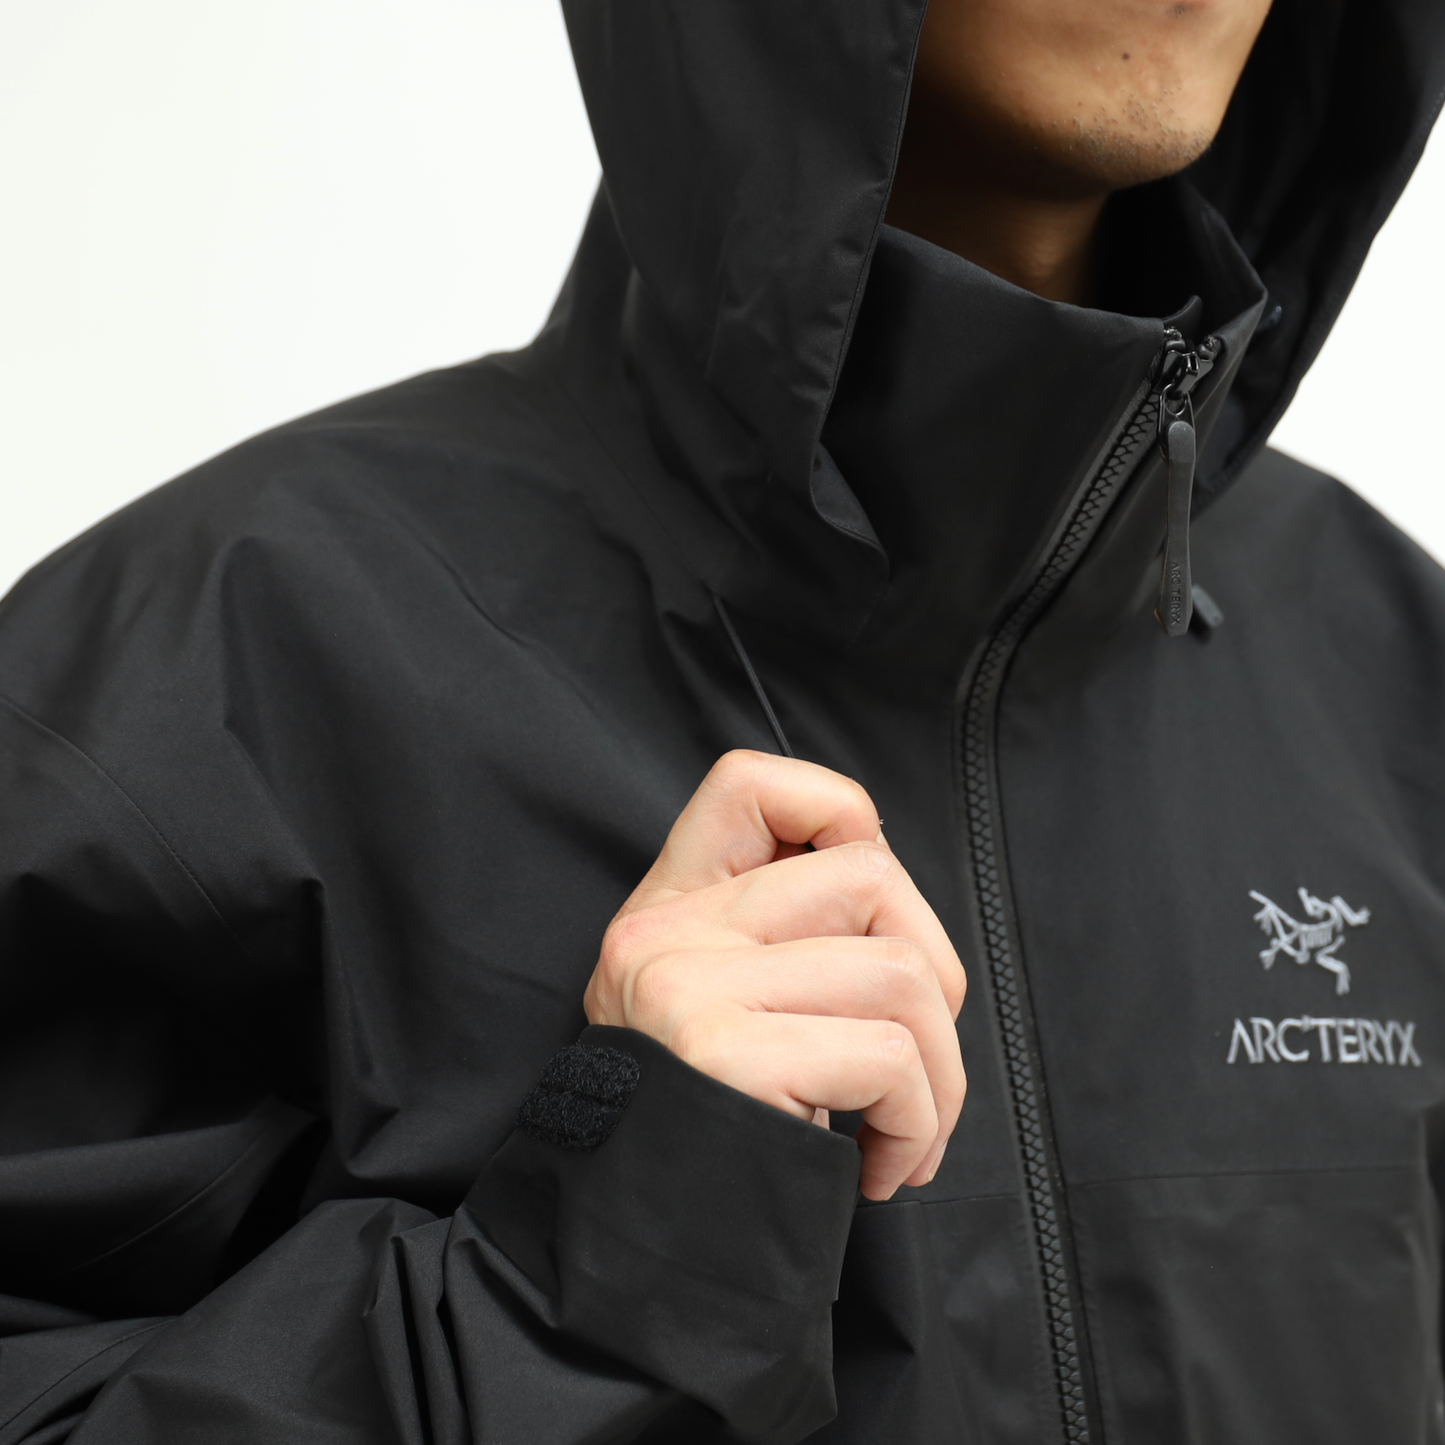 【Arc'teryx】Beta AR Jacket Men's